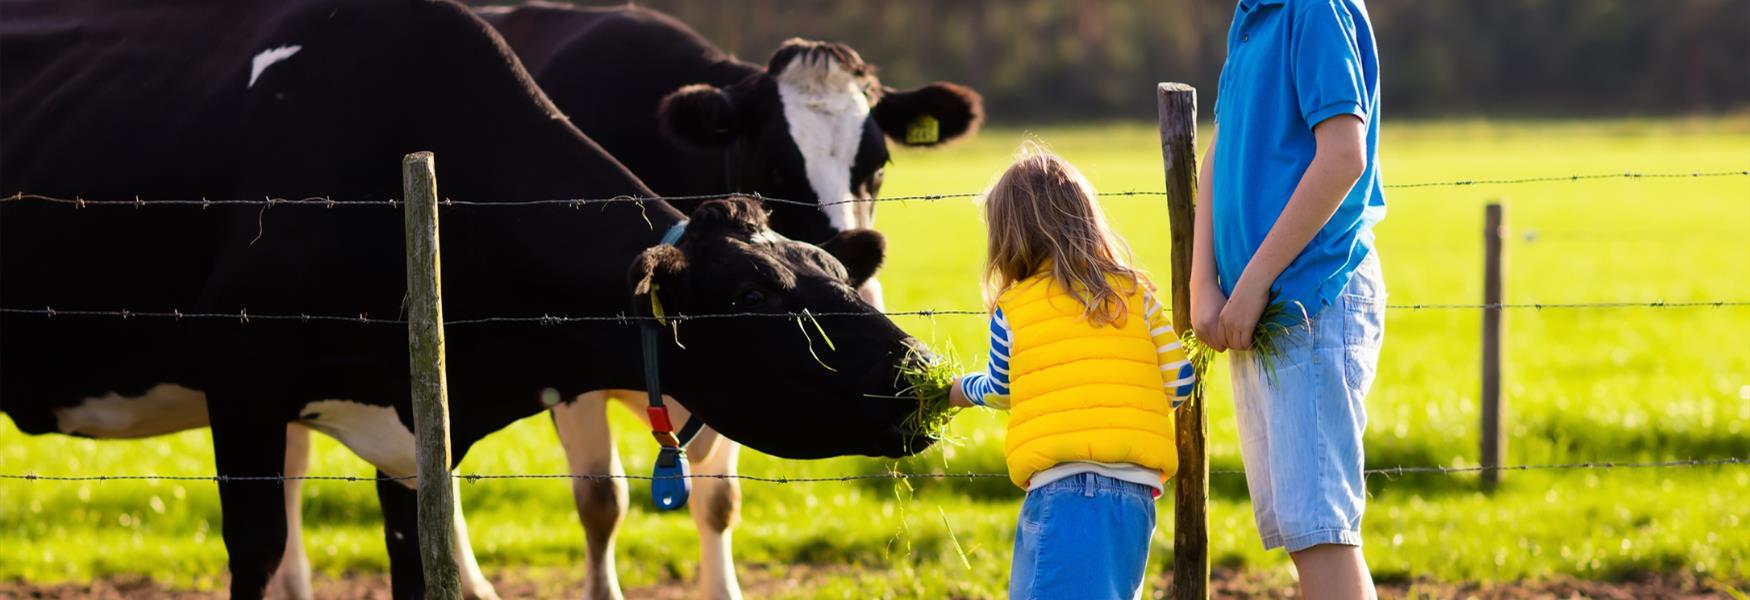 child feeding a cow